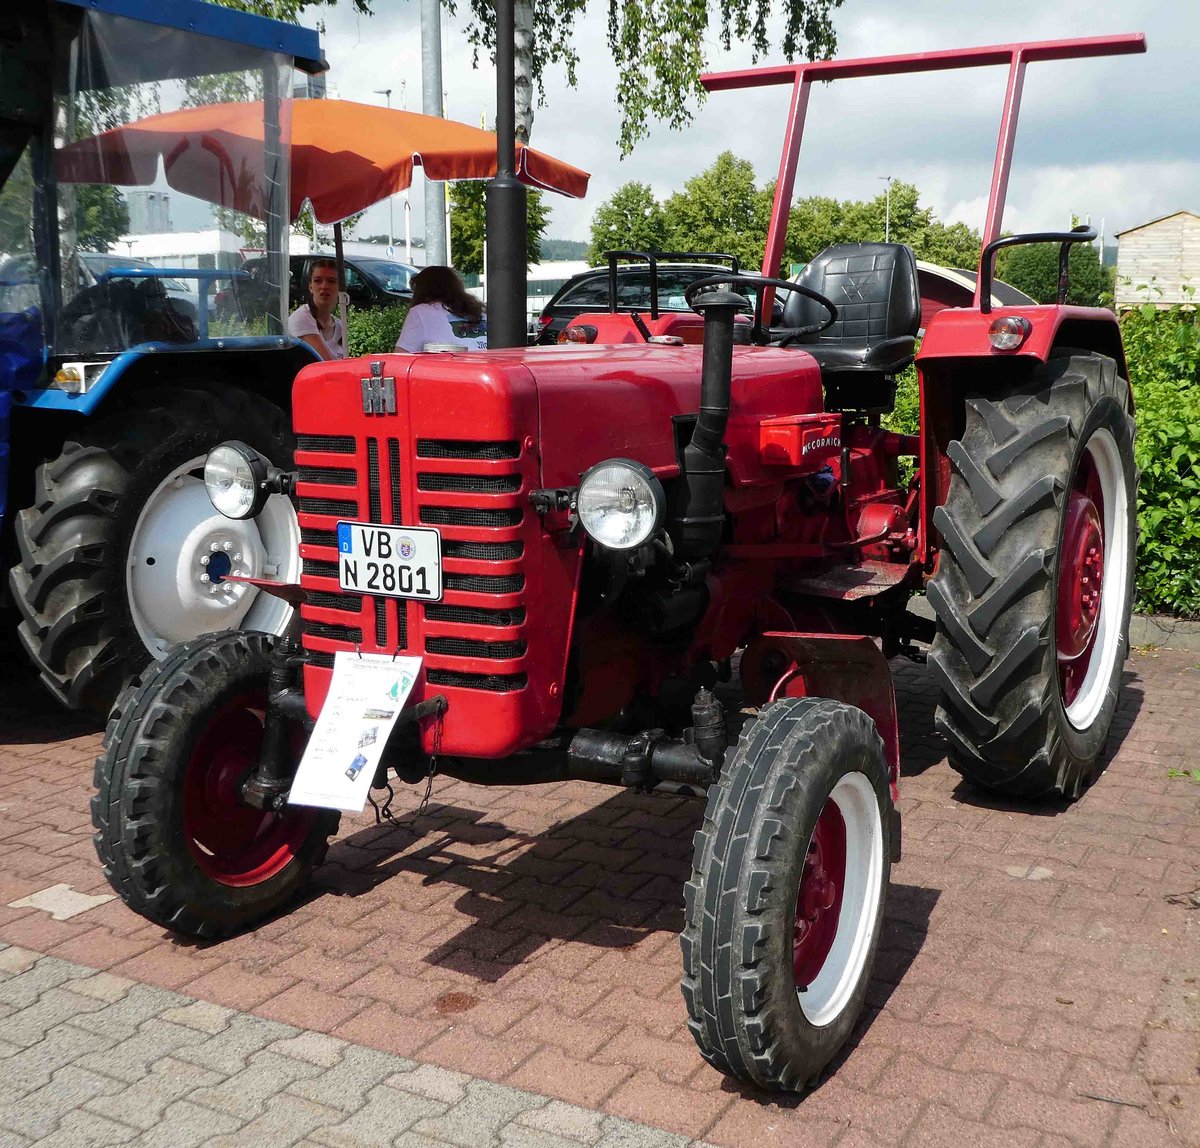 =IHC steht bei der Traktorenausstellung  Ahle Bulldogge us Angeschbach oh Lannehuse  in Angersbach im Juni 2018